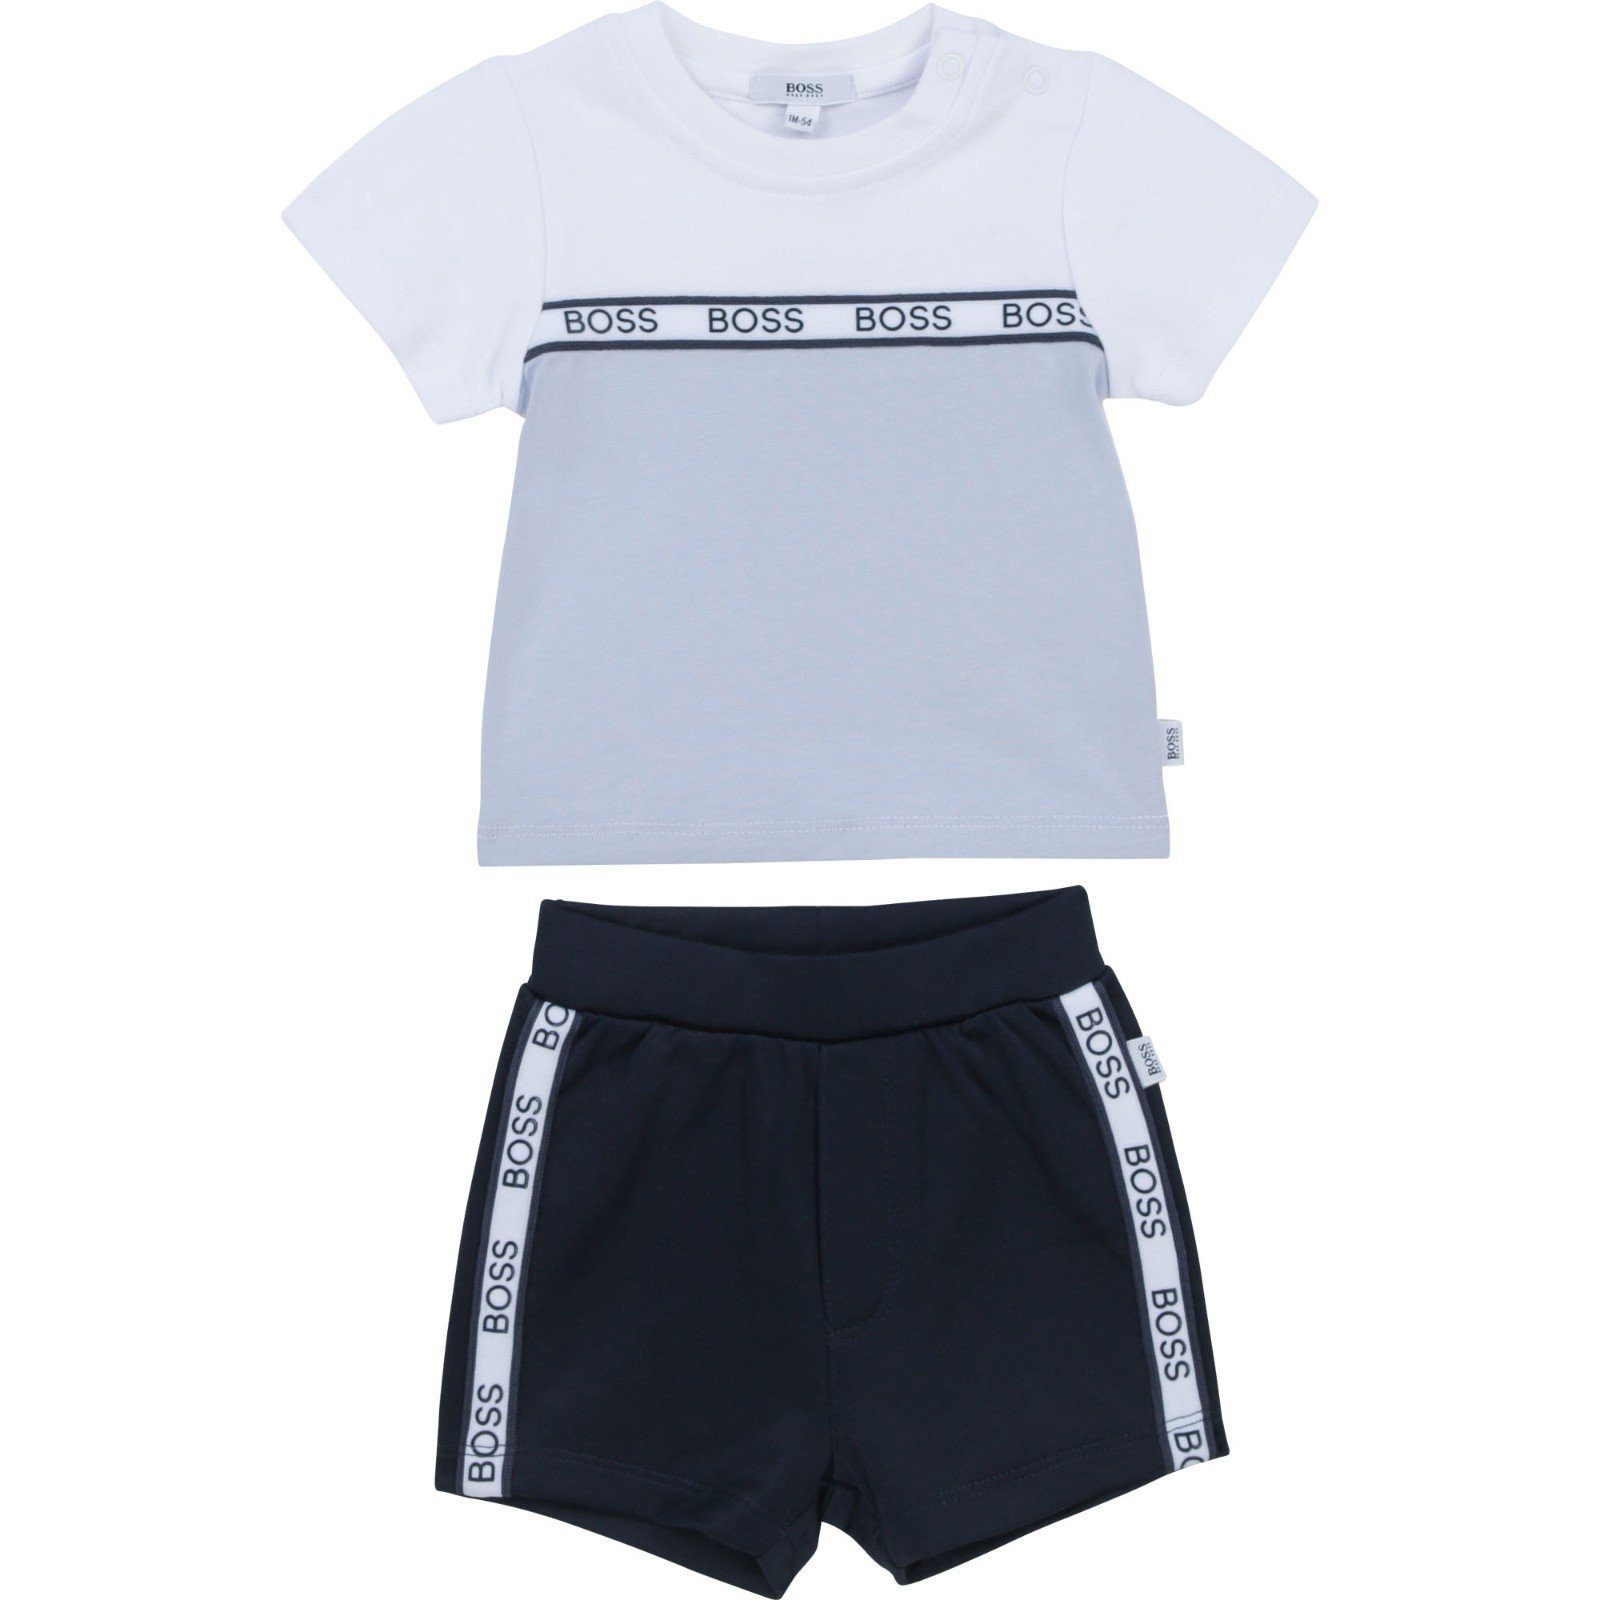 BOSS Neugeborenen-Geschenkset Hugo Boss Set aus T-Shirt und Shorts (T-Shirt und Shorts, zweiteilig)